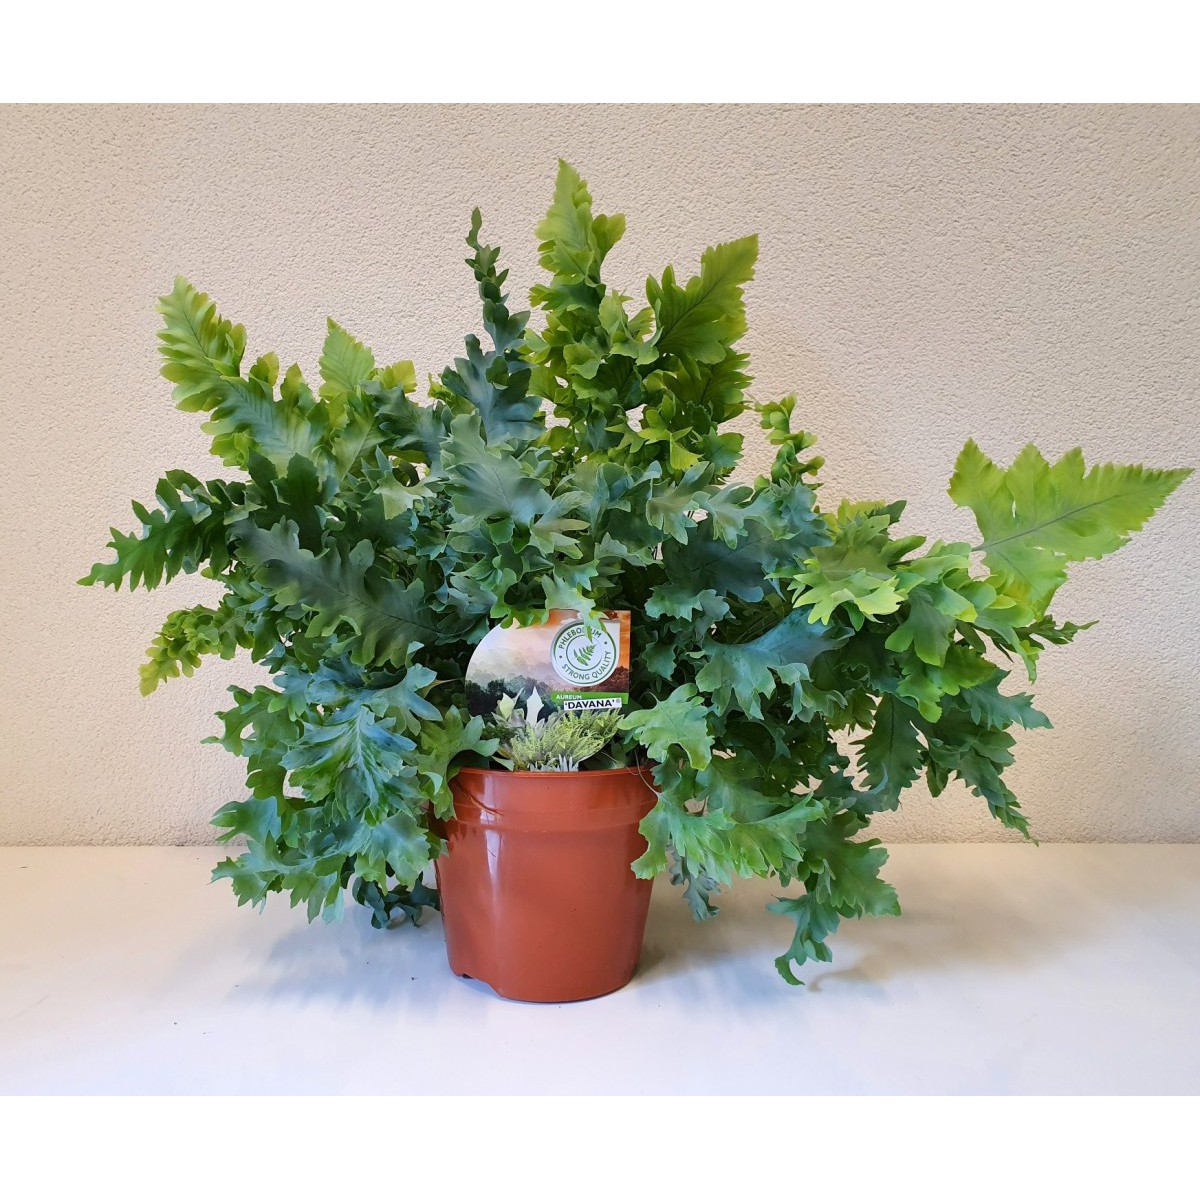   Phlebodium aureum 'Davana'  Pot de 17 cm h35